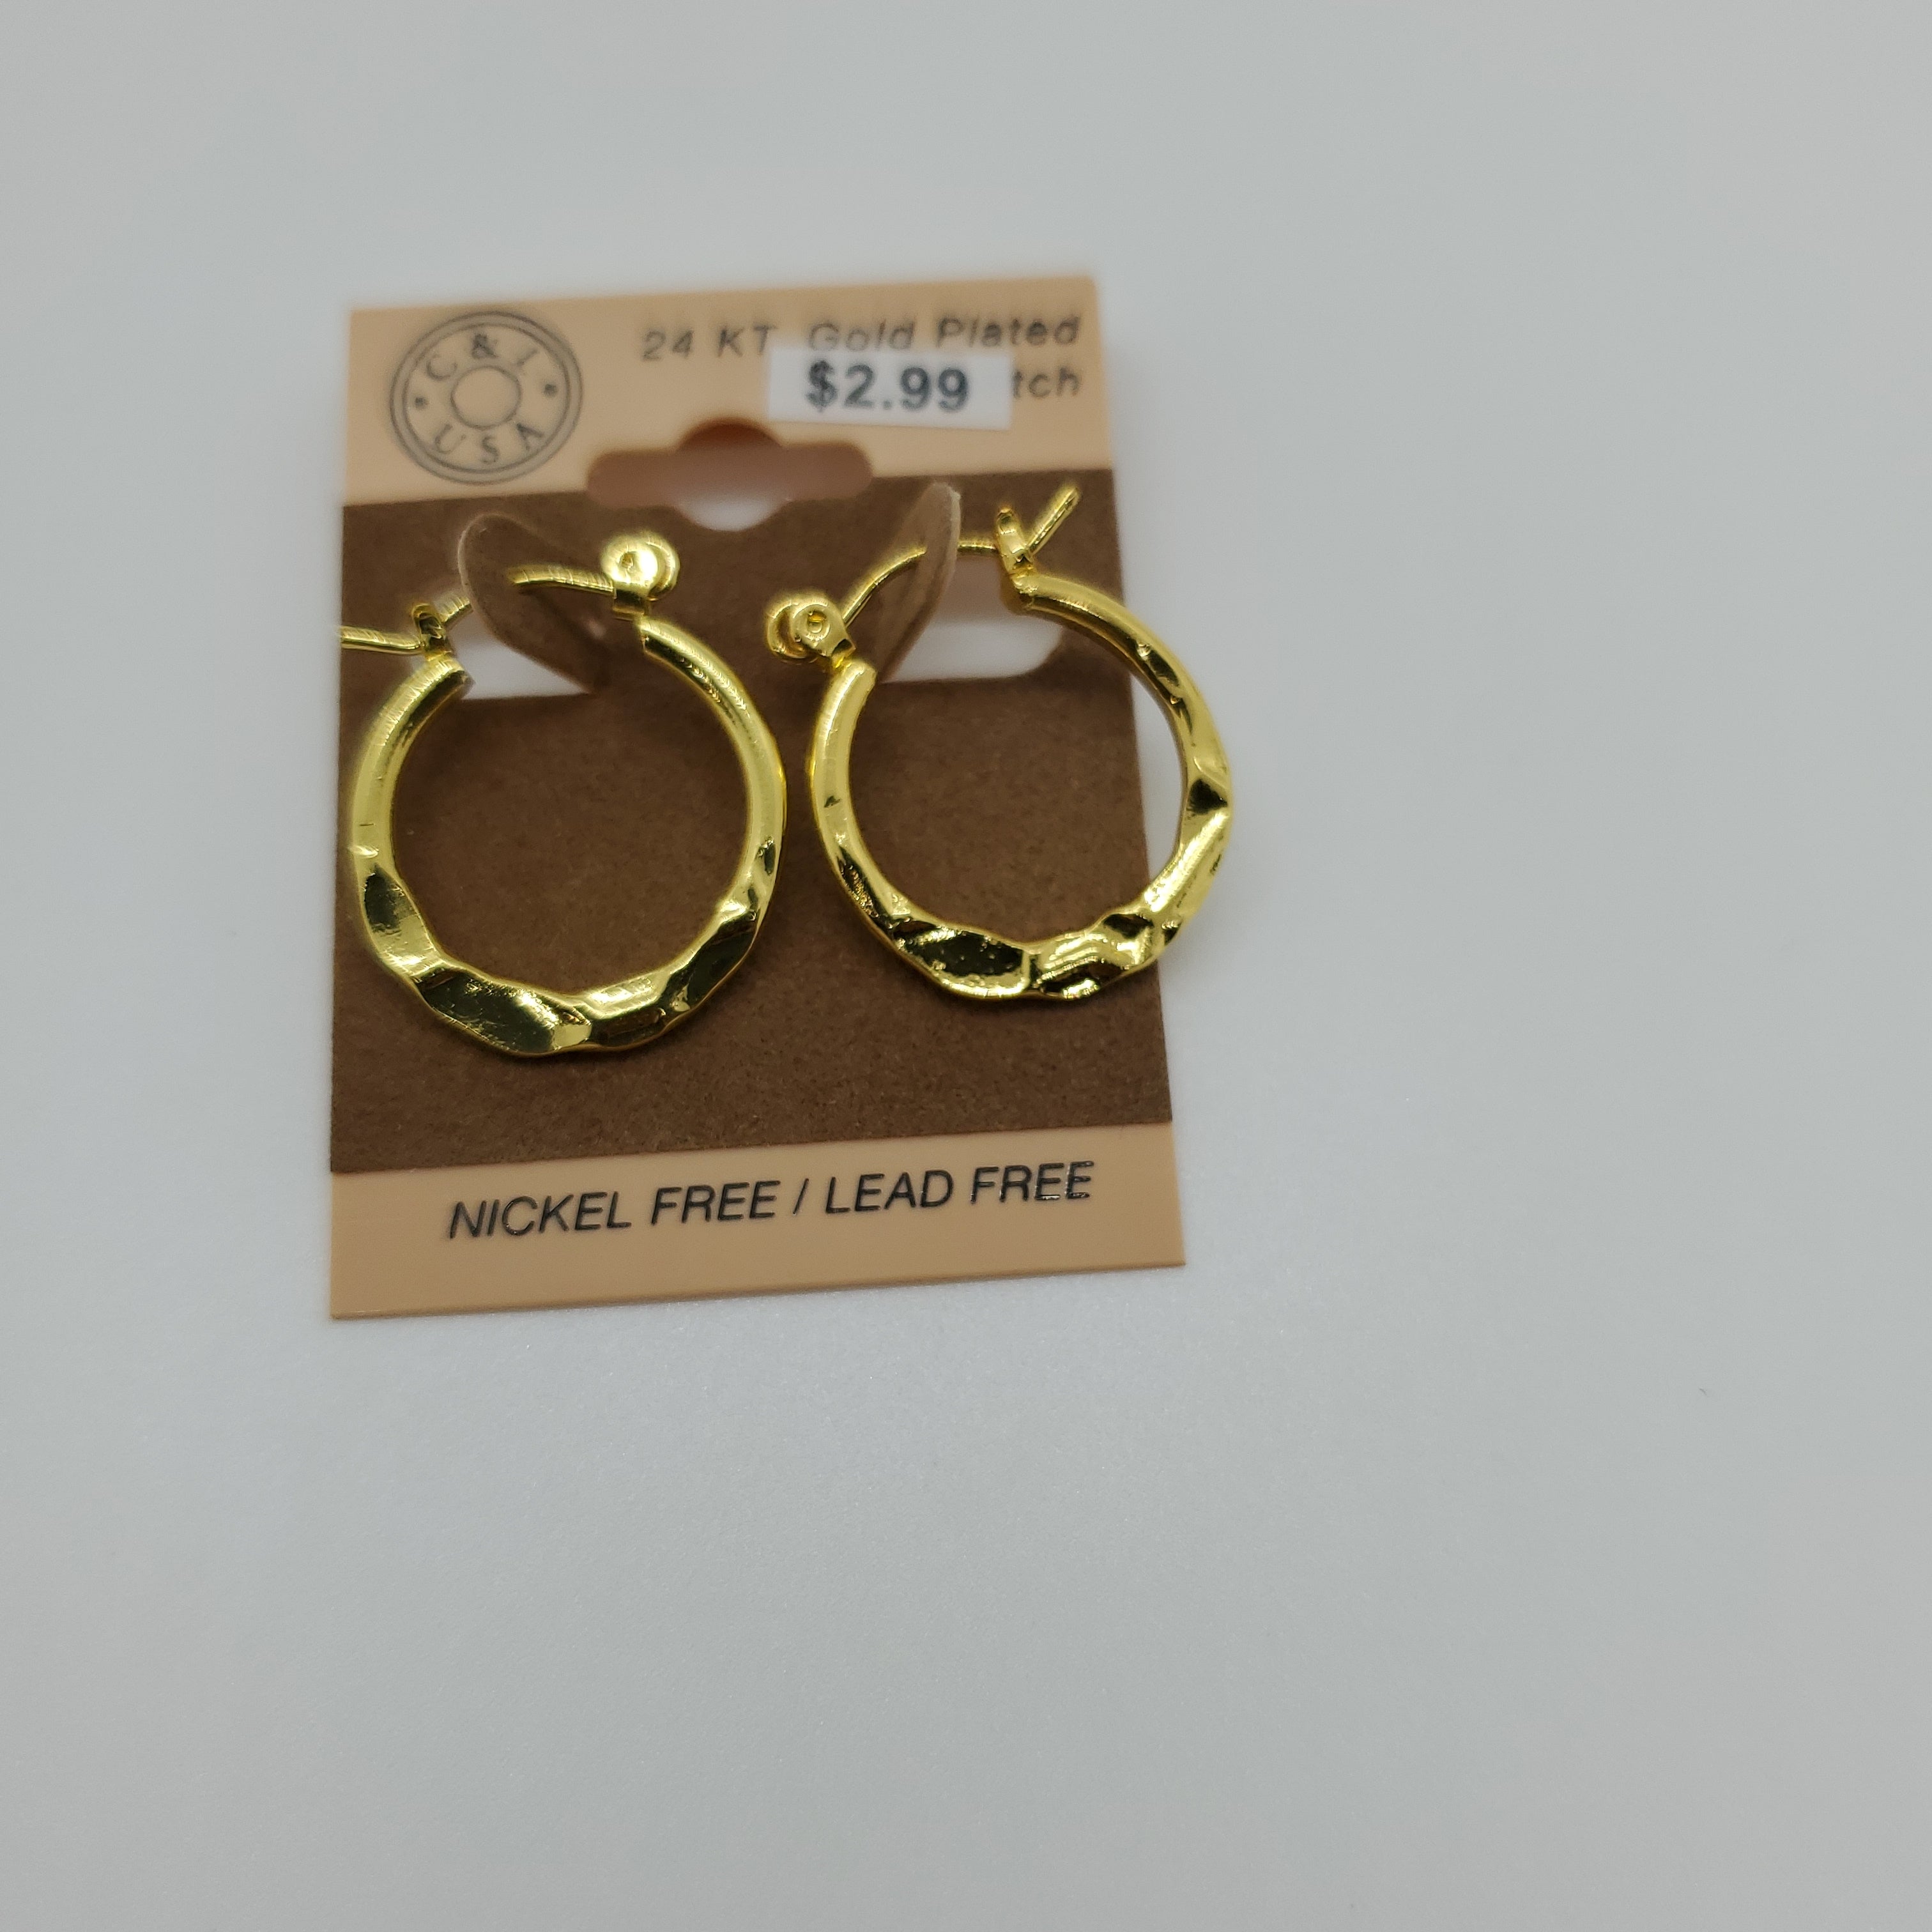 24KT Gold Plated Pincatch Hoop Earrings NPK111 - Beauty Bar & Supply